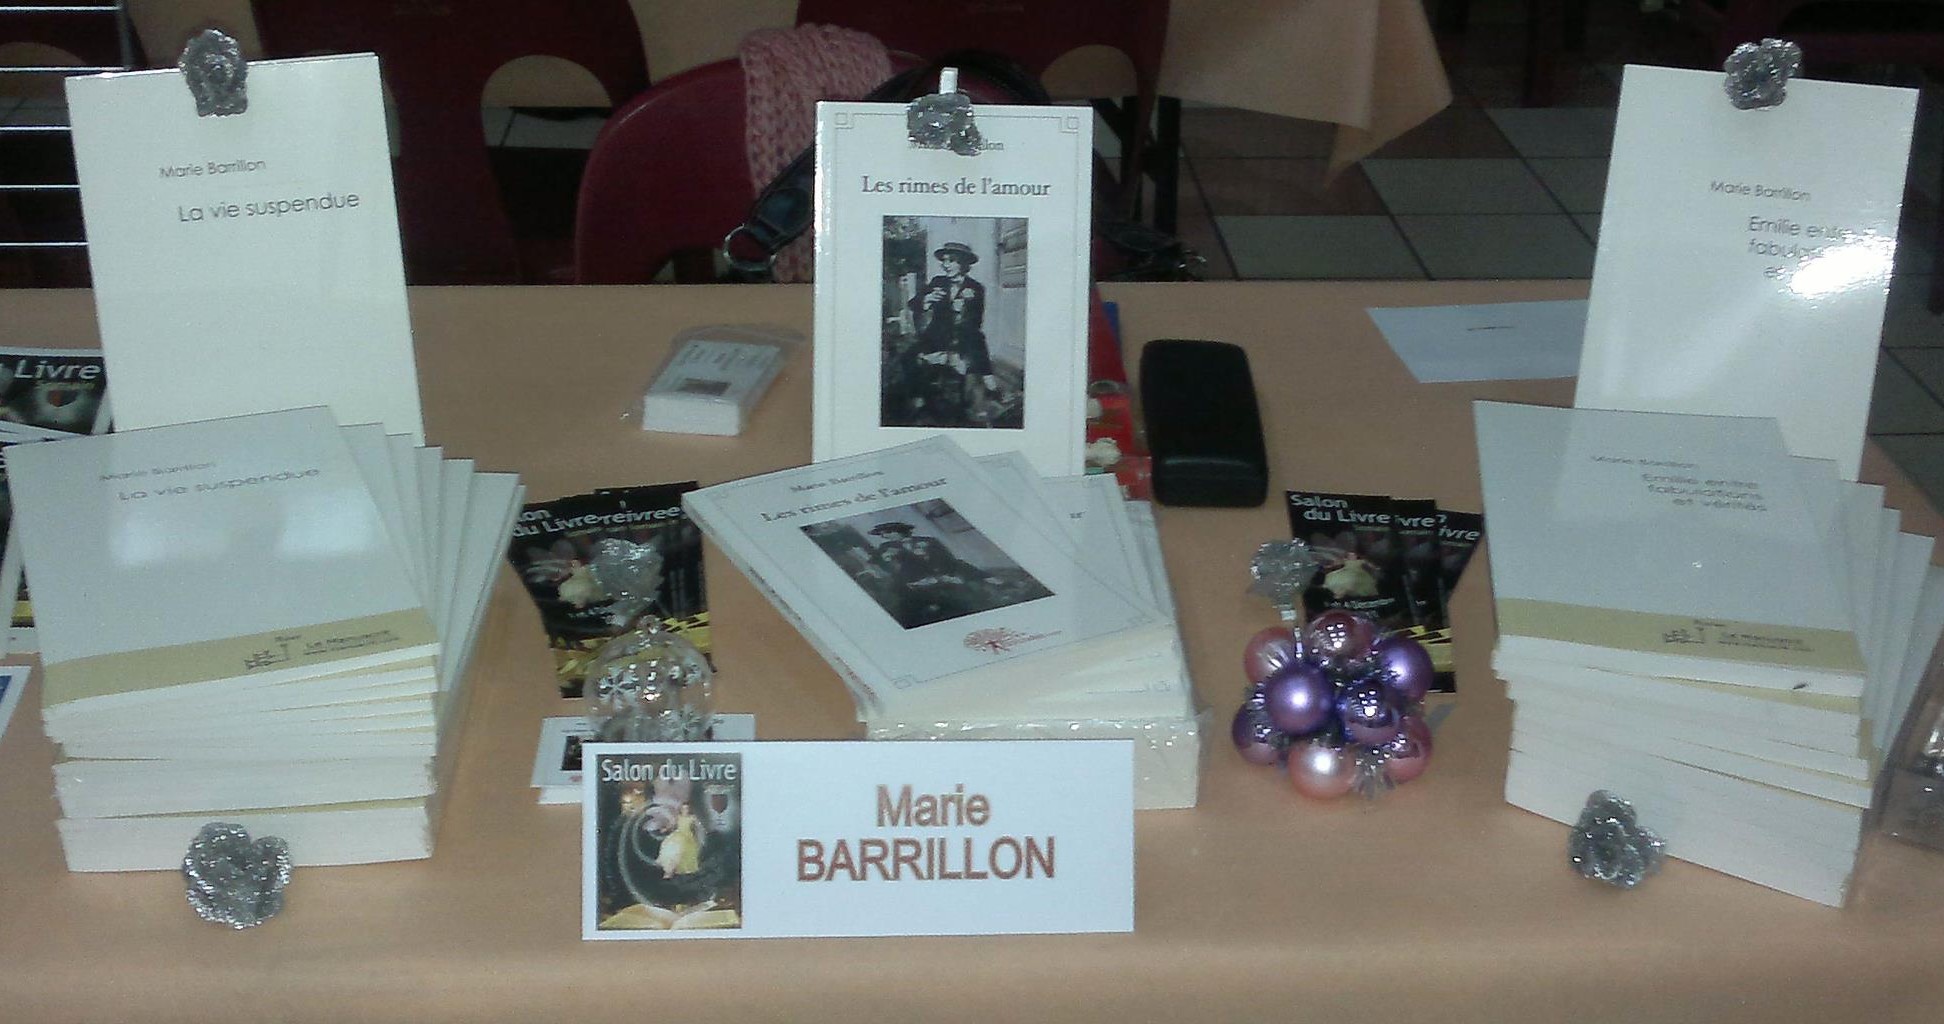 Marie BARRILLON - Salon du livre de Somain (59) - Le 04-12-2011